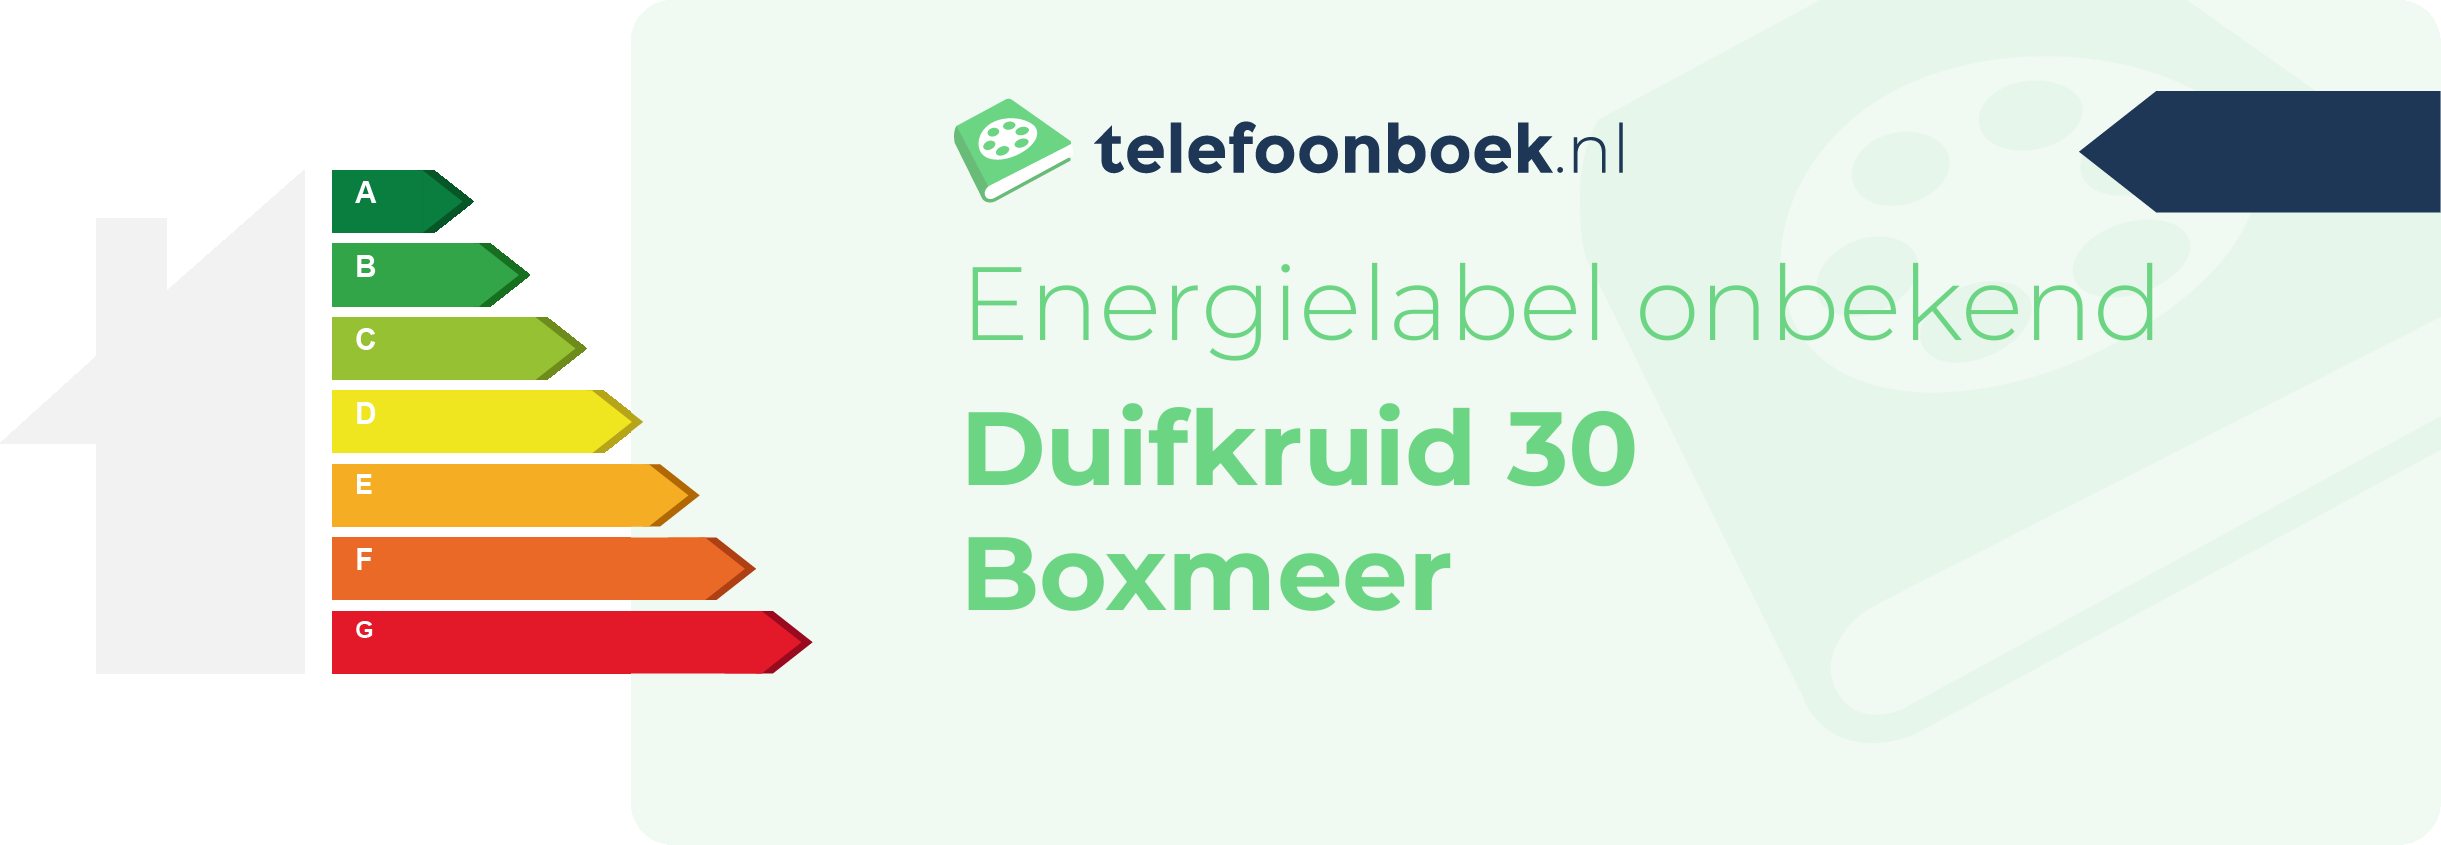 Energielabel Duifkruid 30 Boxmeer